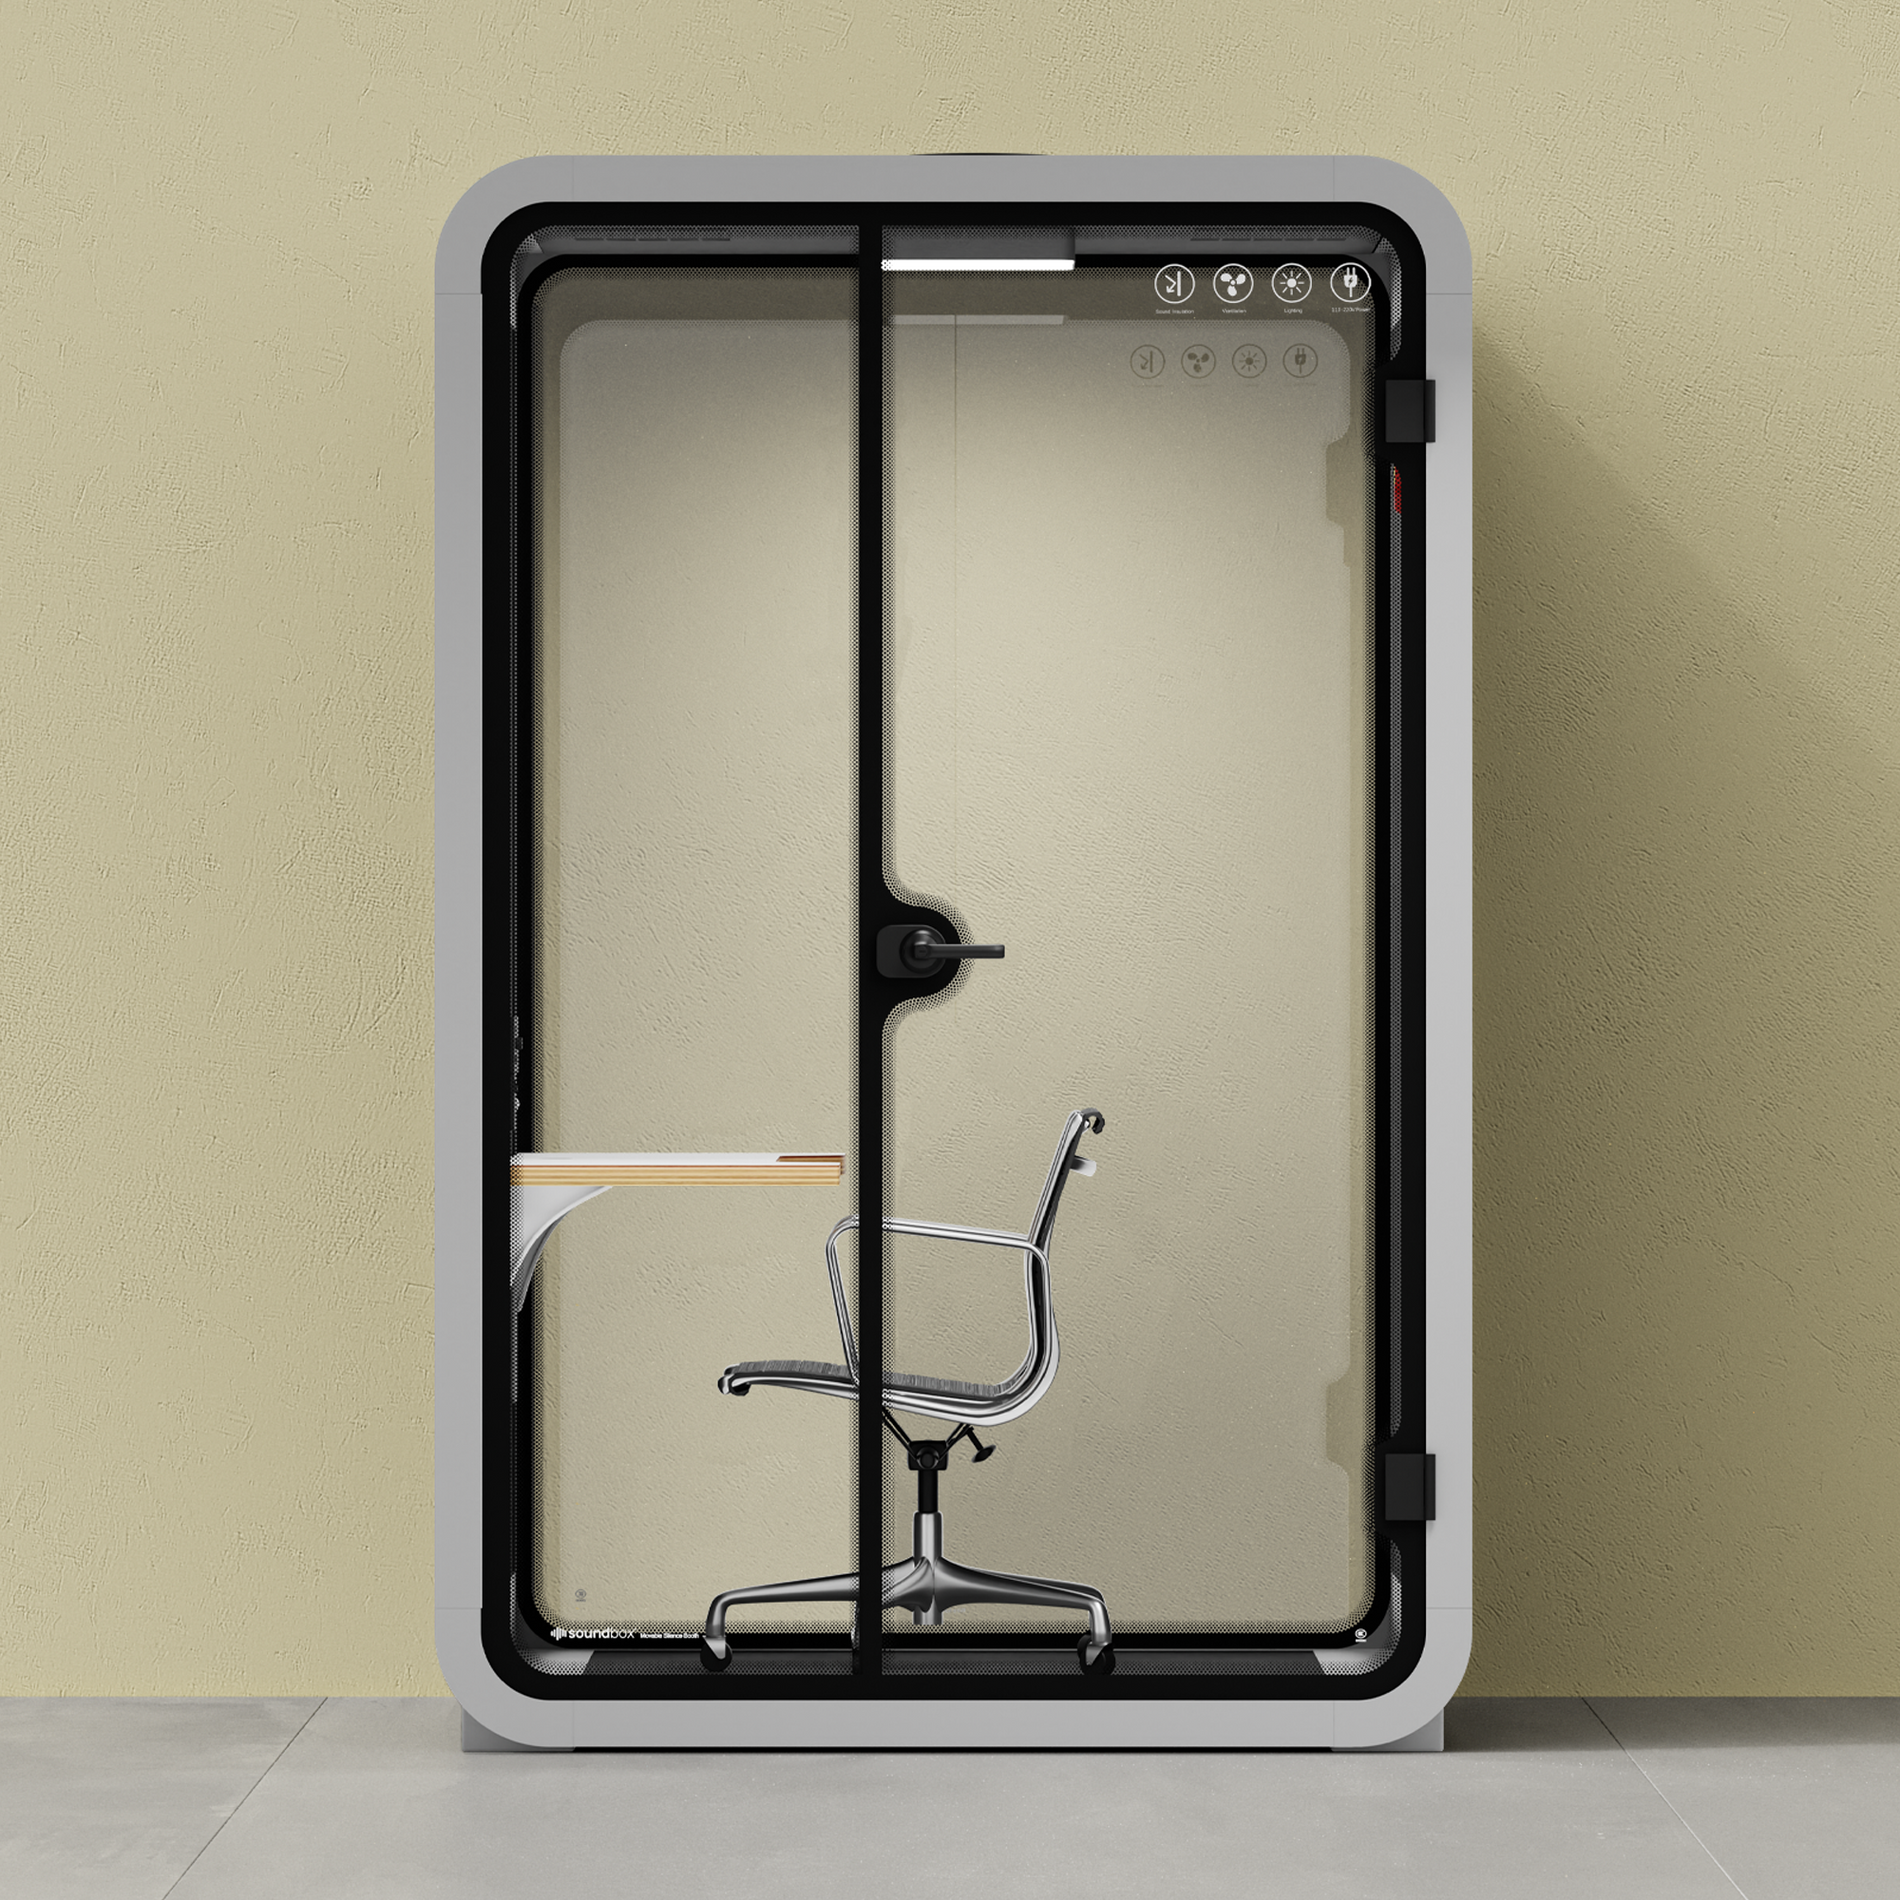 Toimiston puhelinkoppi Quell - 2 henkilöäLight Grey / Dark Gray / Work Station + Designer Office Chair